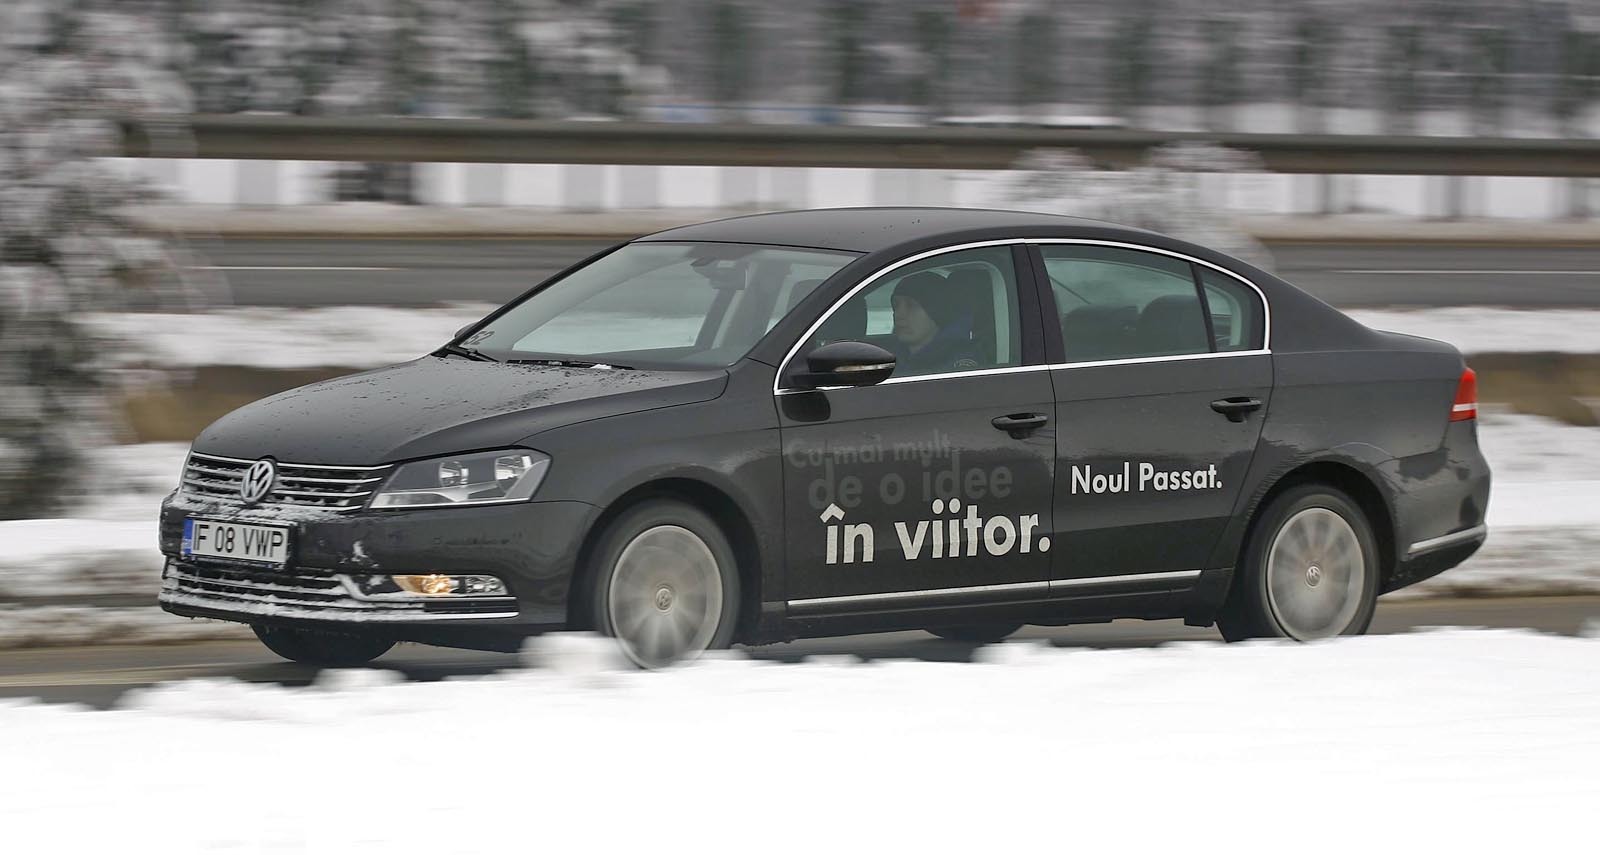 VW Passat 2.0 TDI 140 consuma mai putin cu 1 litru/100 km decat concurentii sai japonezi